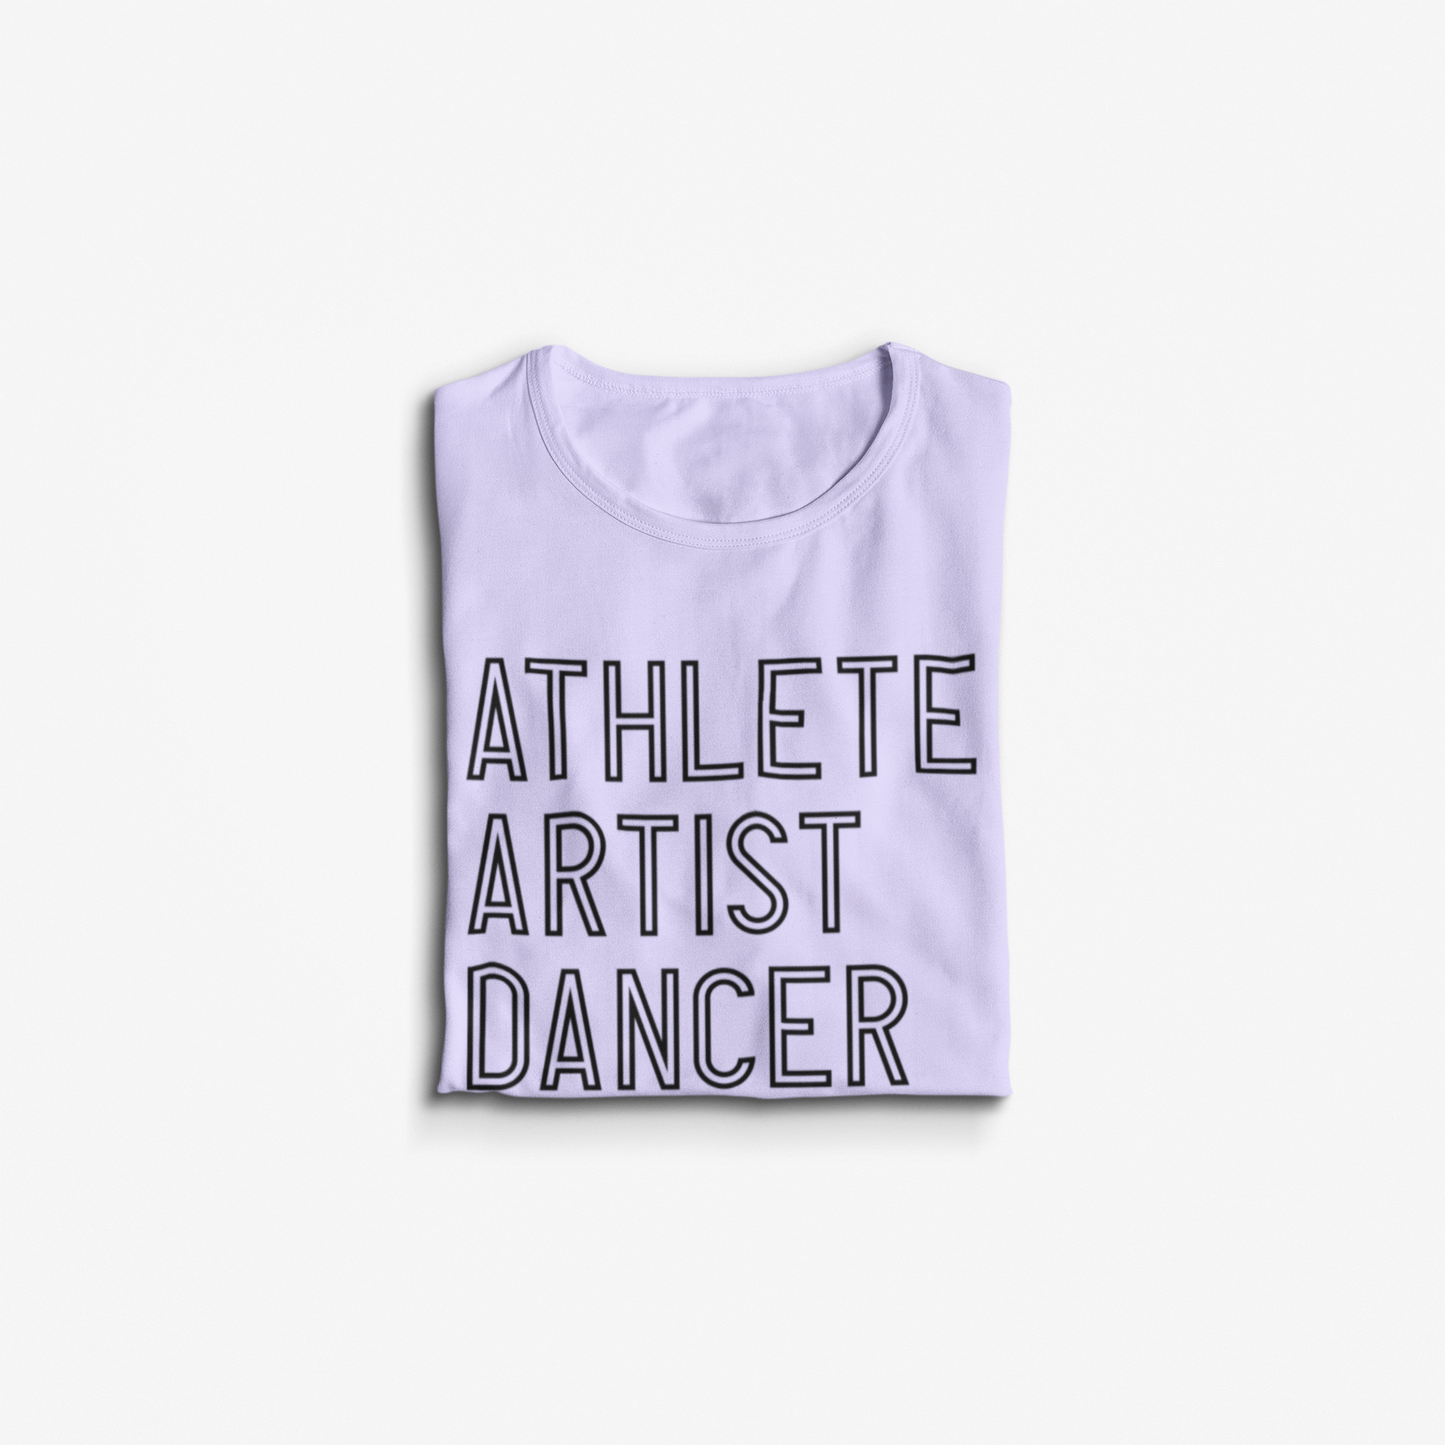 Athlete Artist Dancer SVG Digital Download Design File